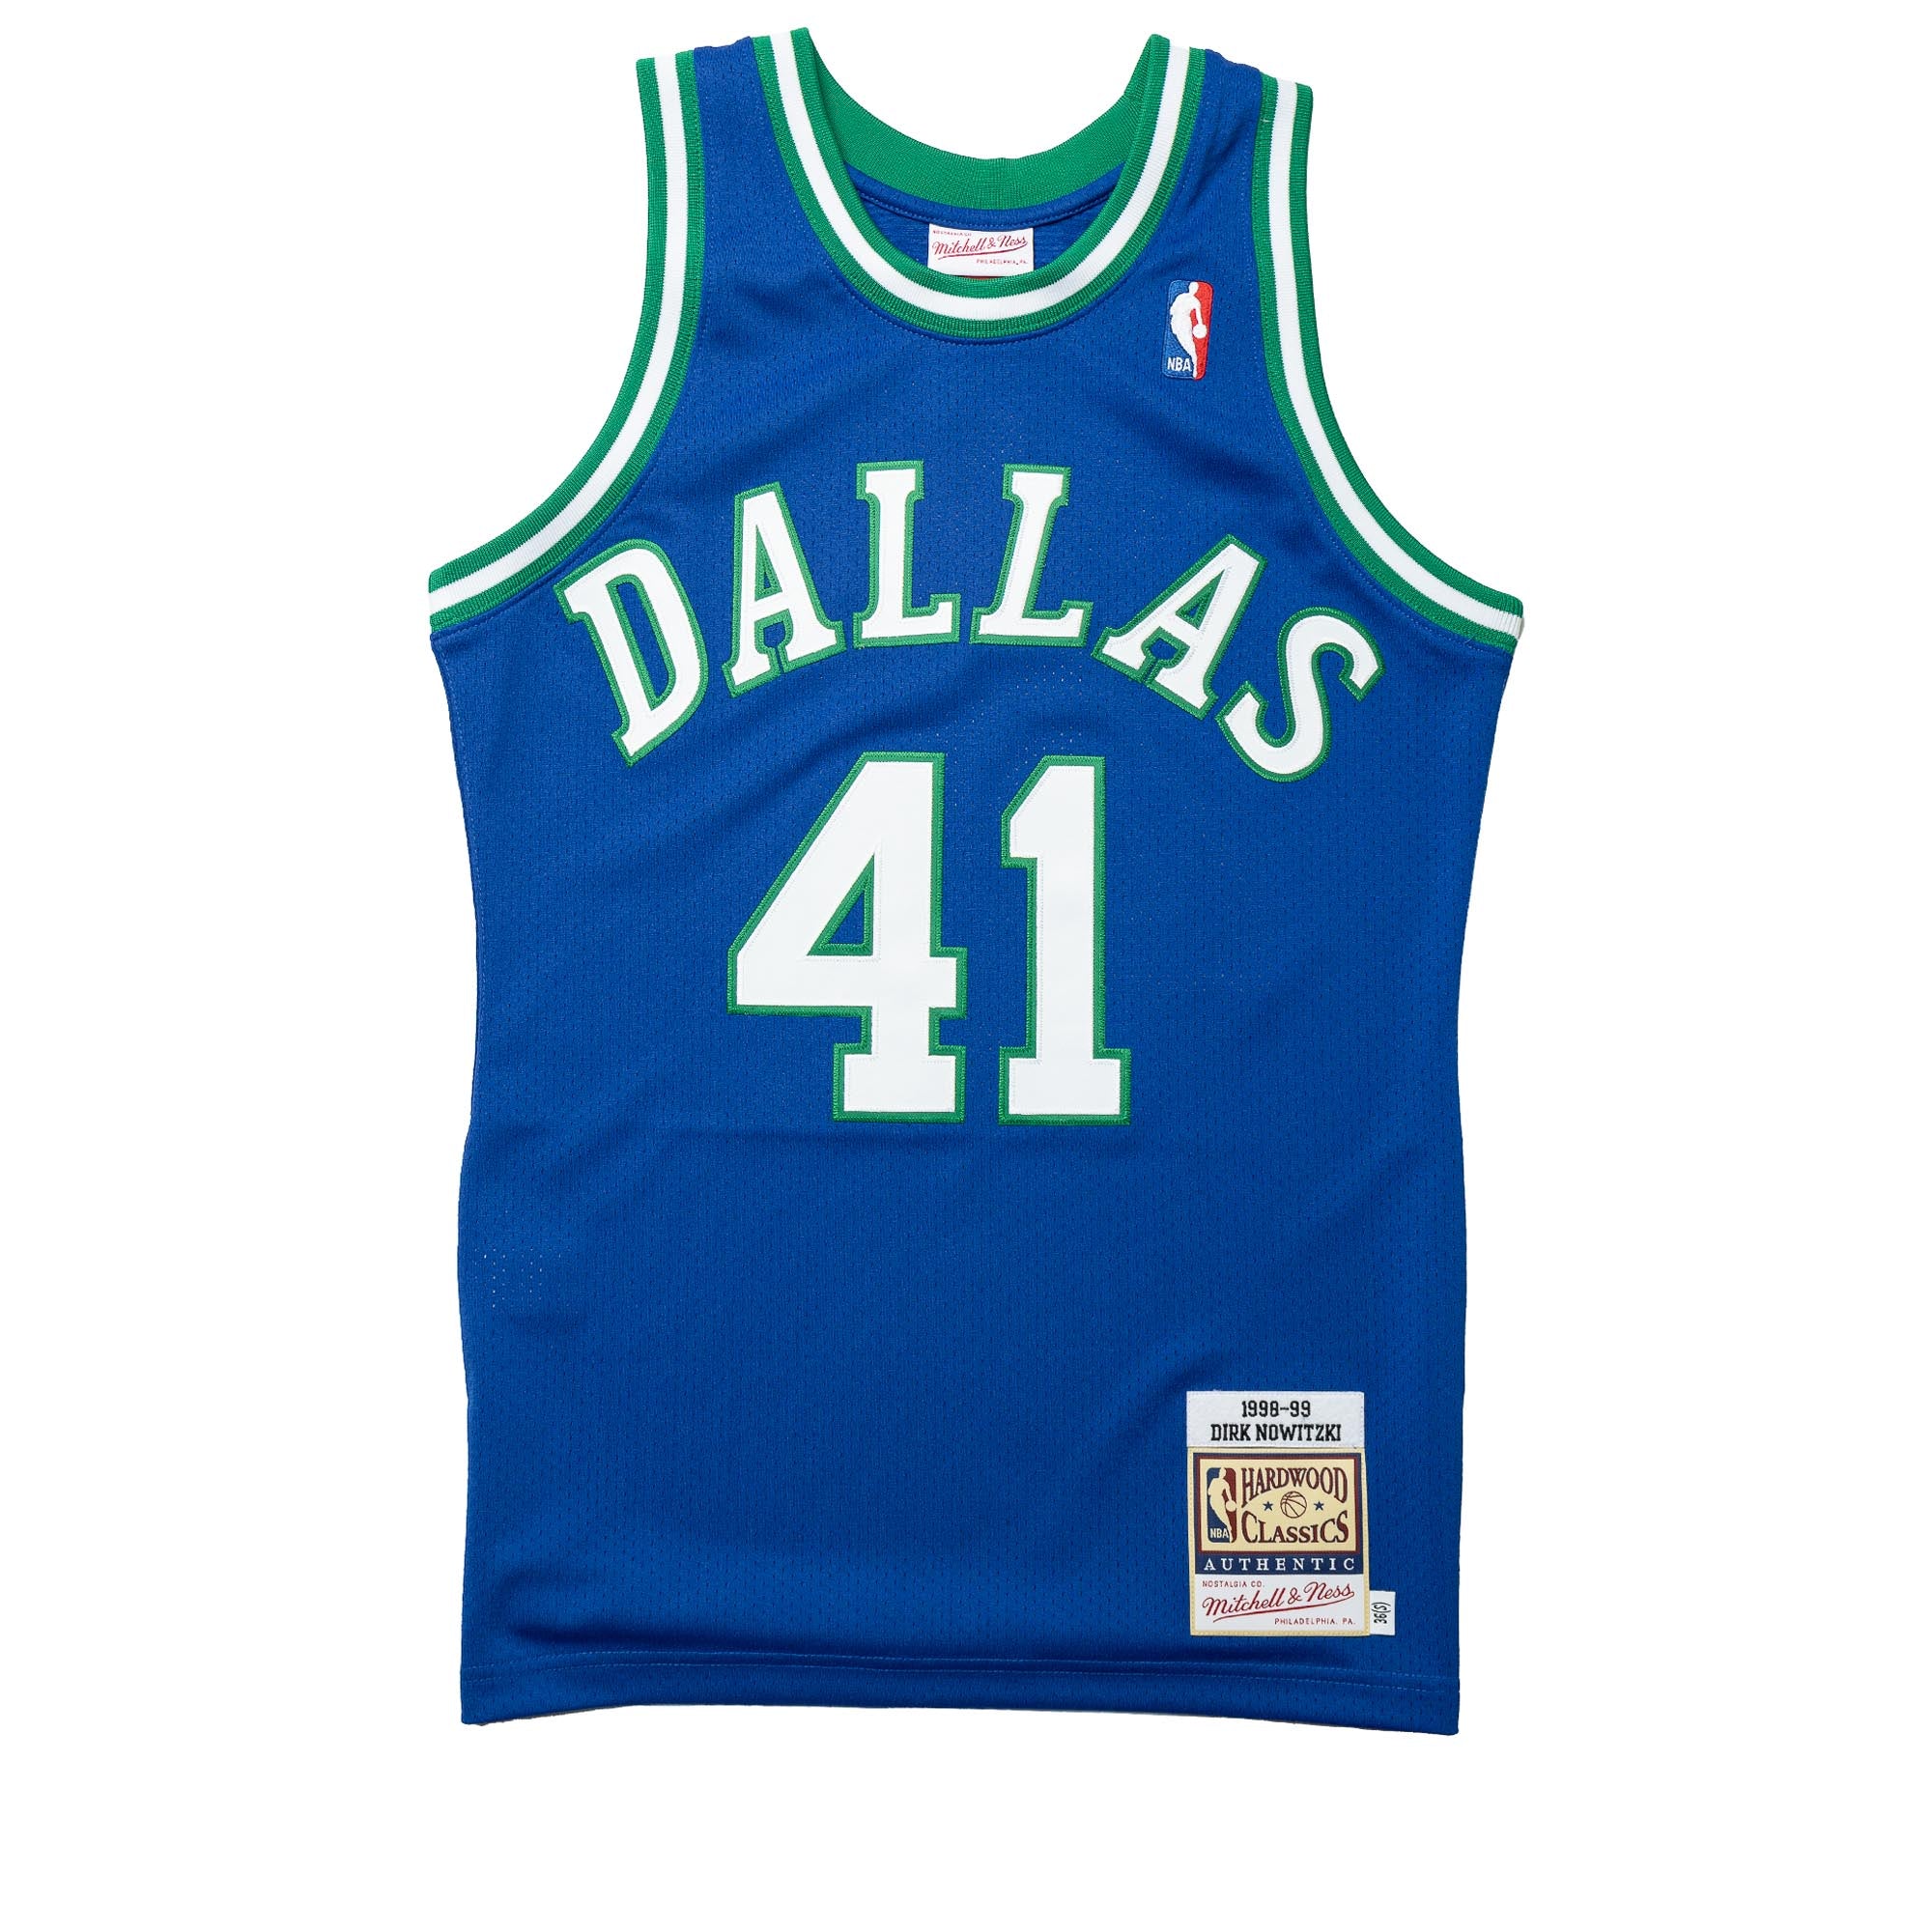  MITCHELL & NESS NBA Authentic Jersey Dallas Mavericks